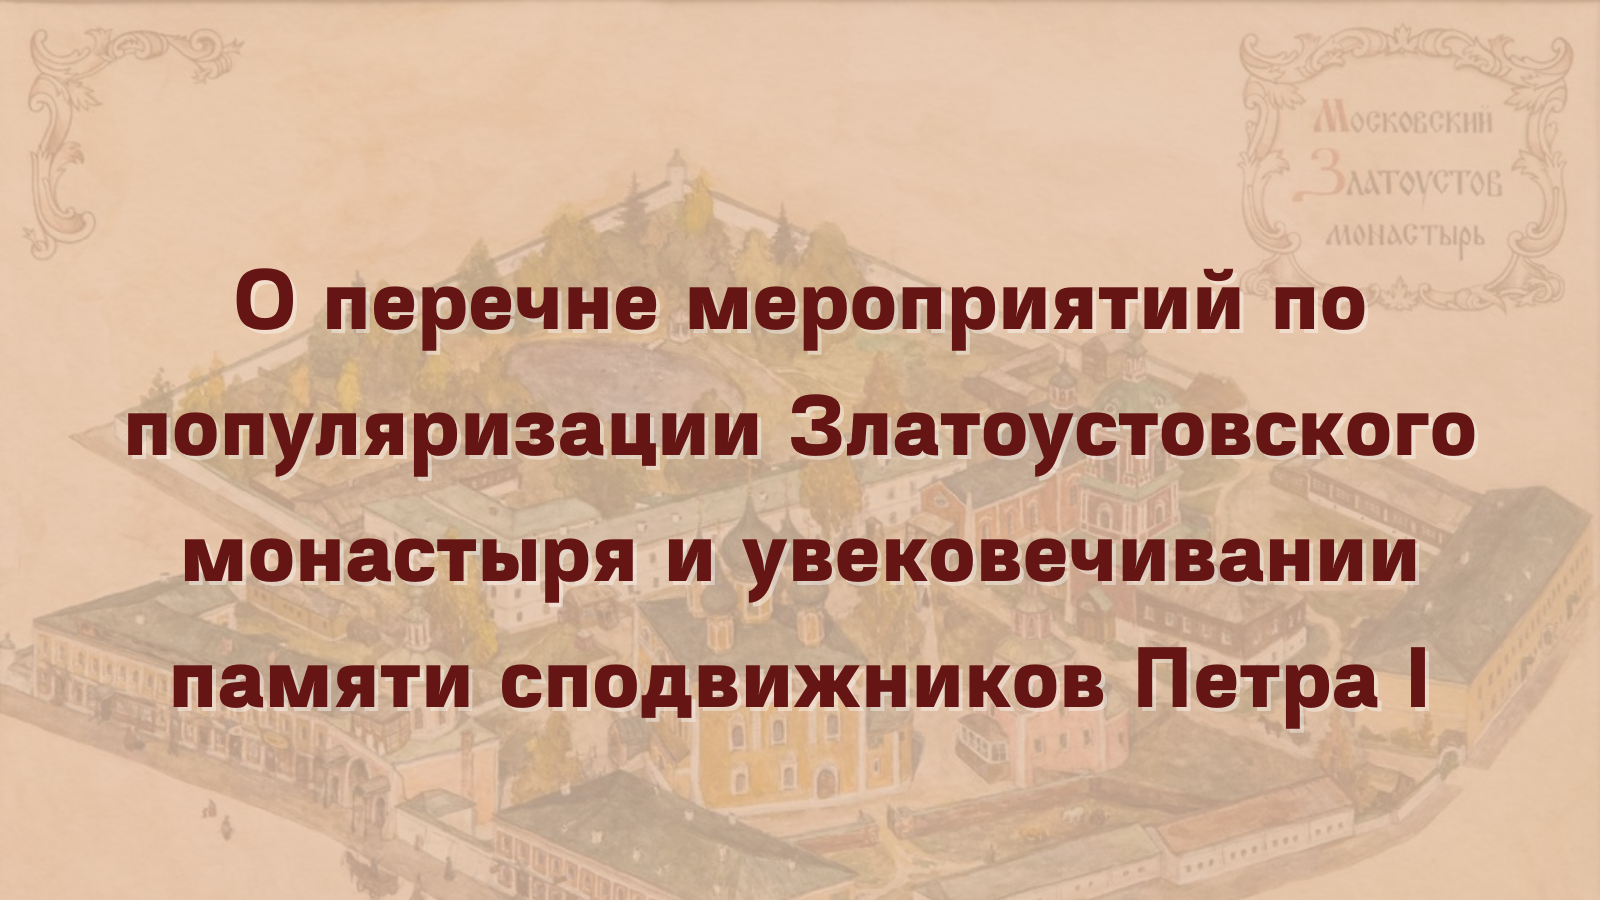 О перечне мероприятий по популяризации Златоустовского монастыря